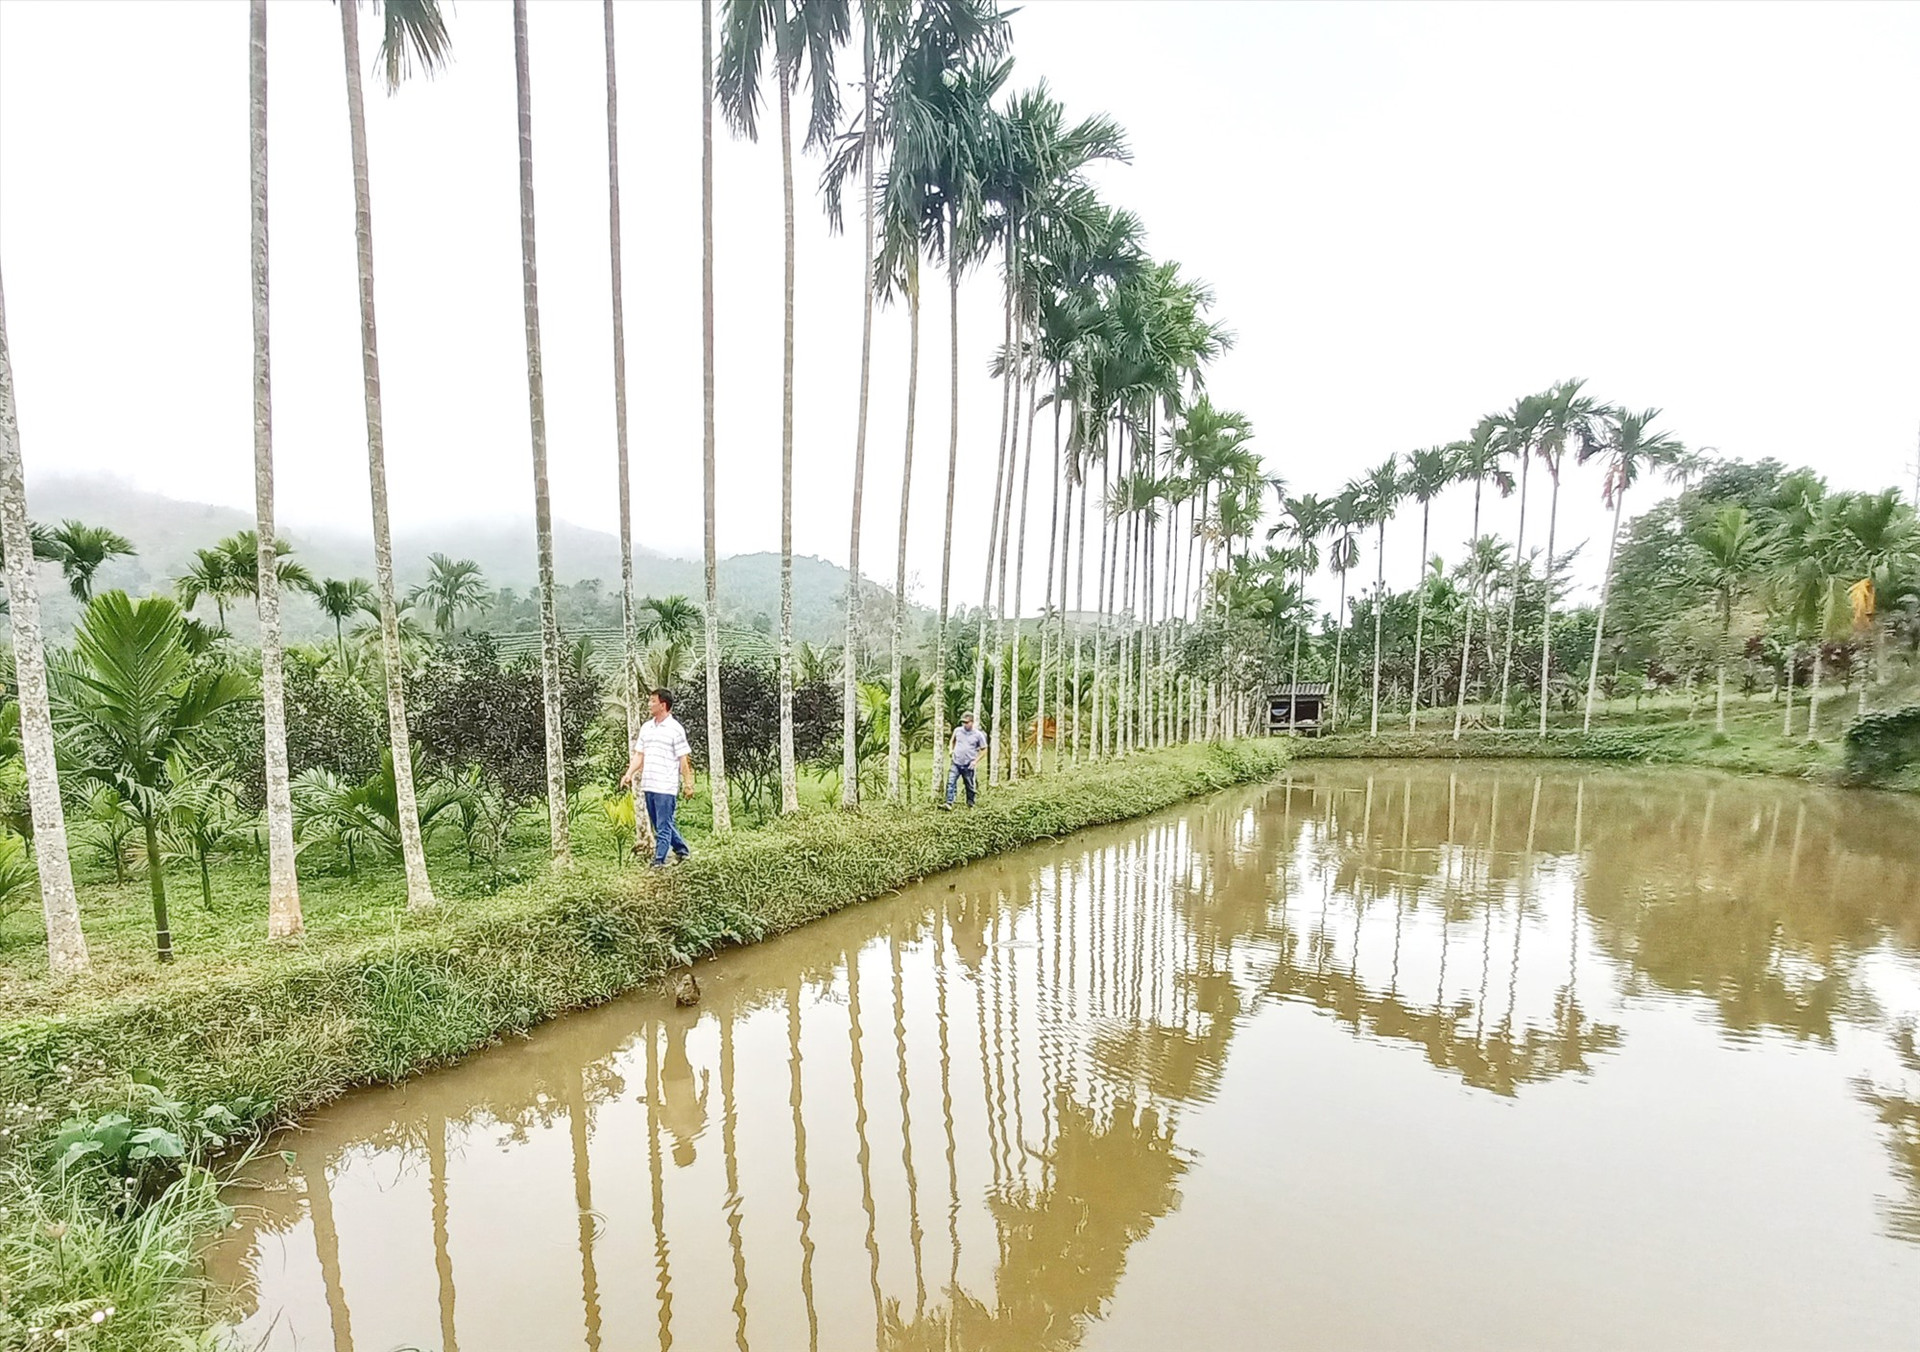 Khu vườn rộng khoảng 1ha của hộ ông Phan Thanh Bình (thôn Ban Mai, xã Ba) được cải tạo nuôi cá, trồng 1.000 cây cau, hàng trăm cây dừa và nhiều loại cây ăn quả. Ảnh: KK